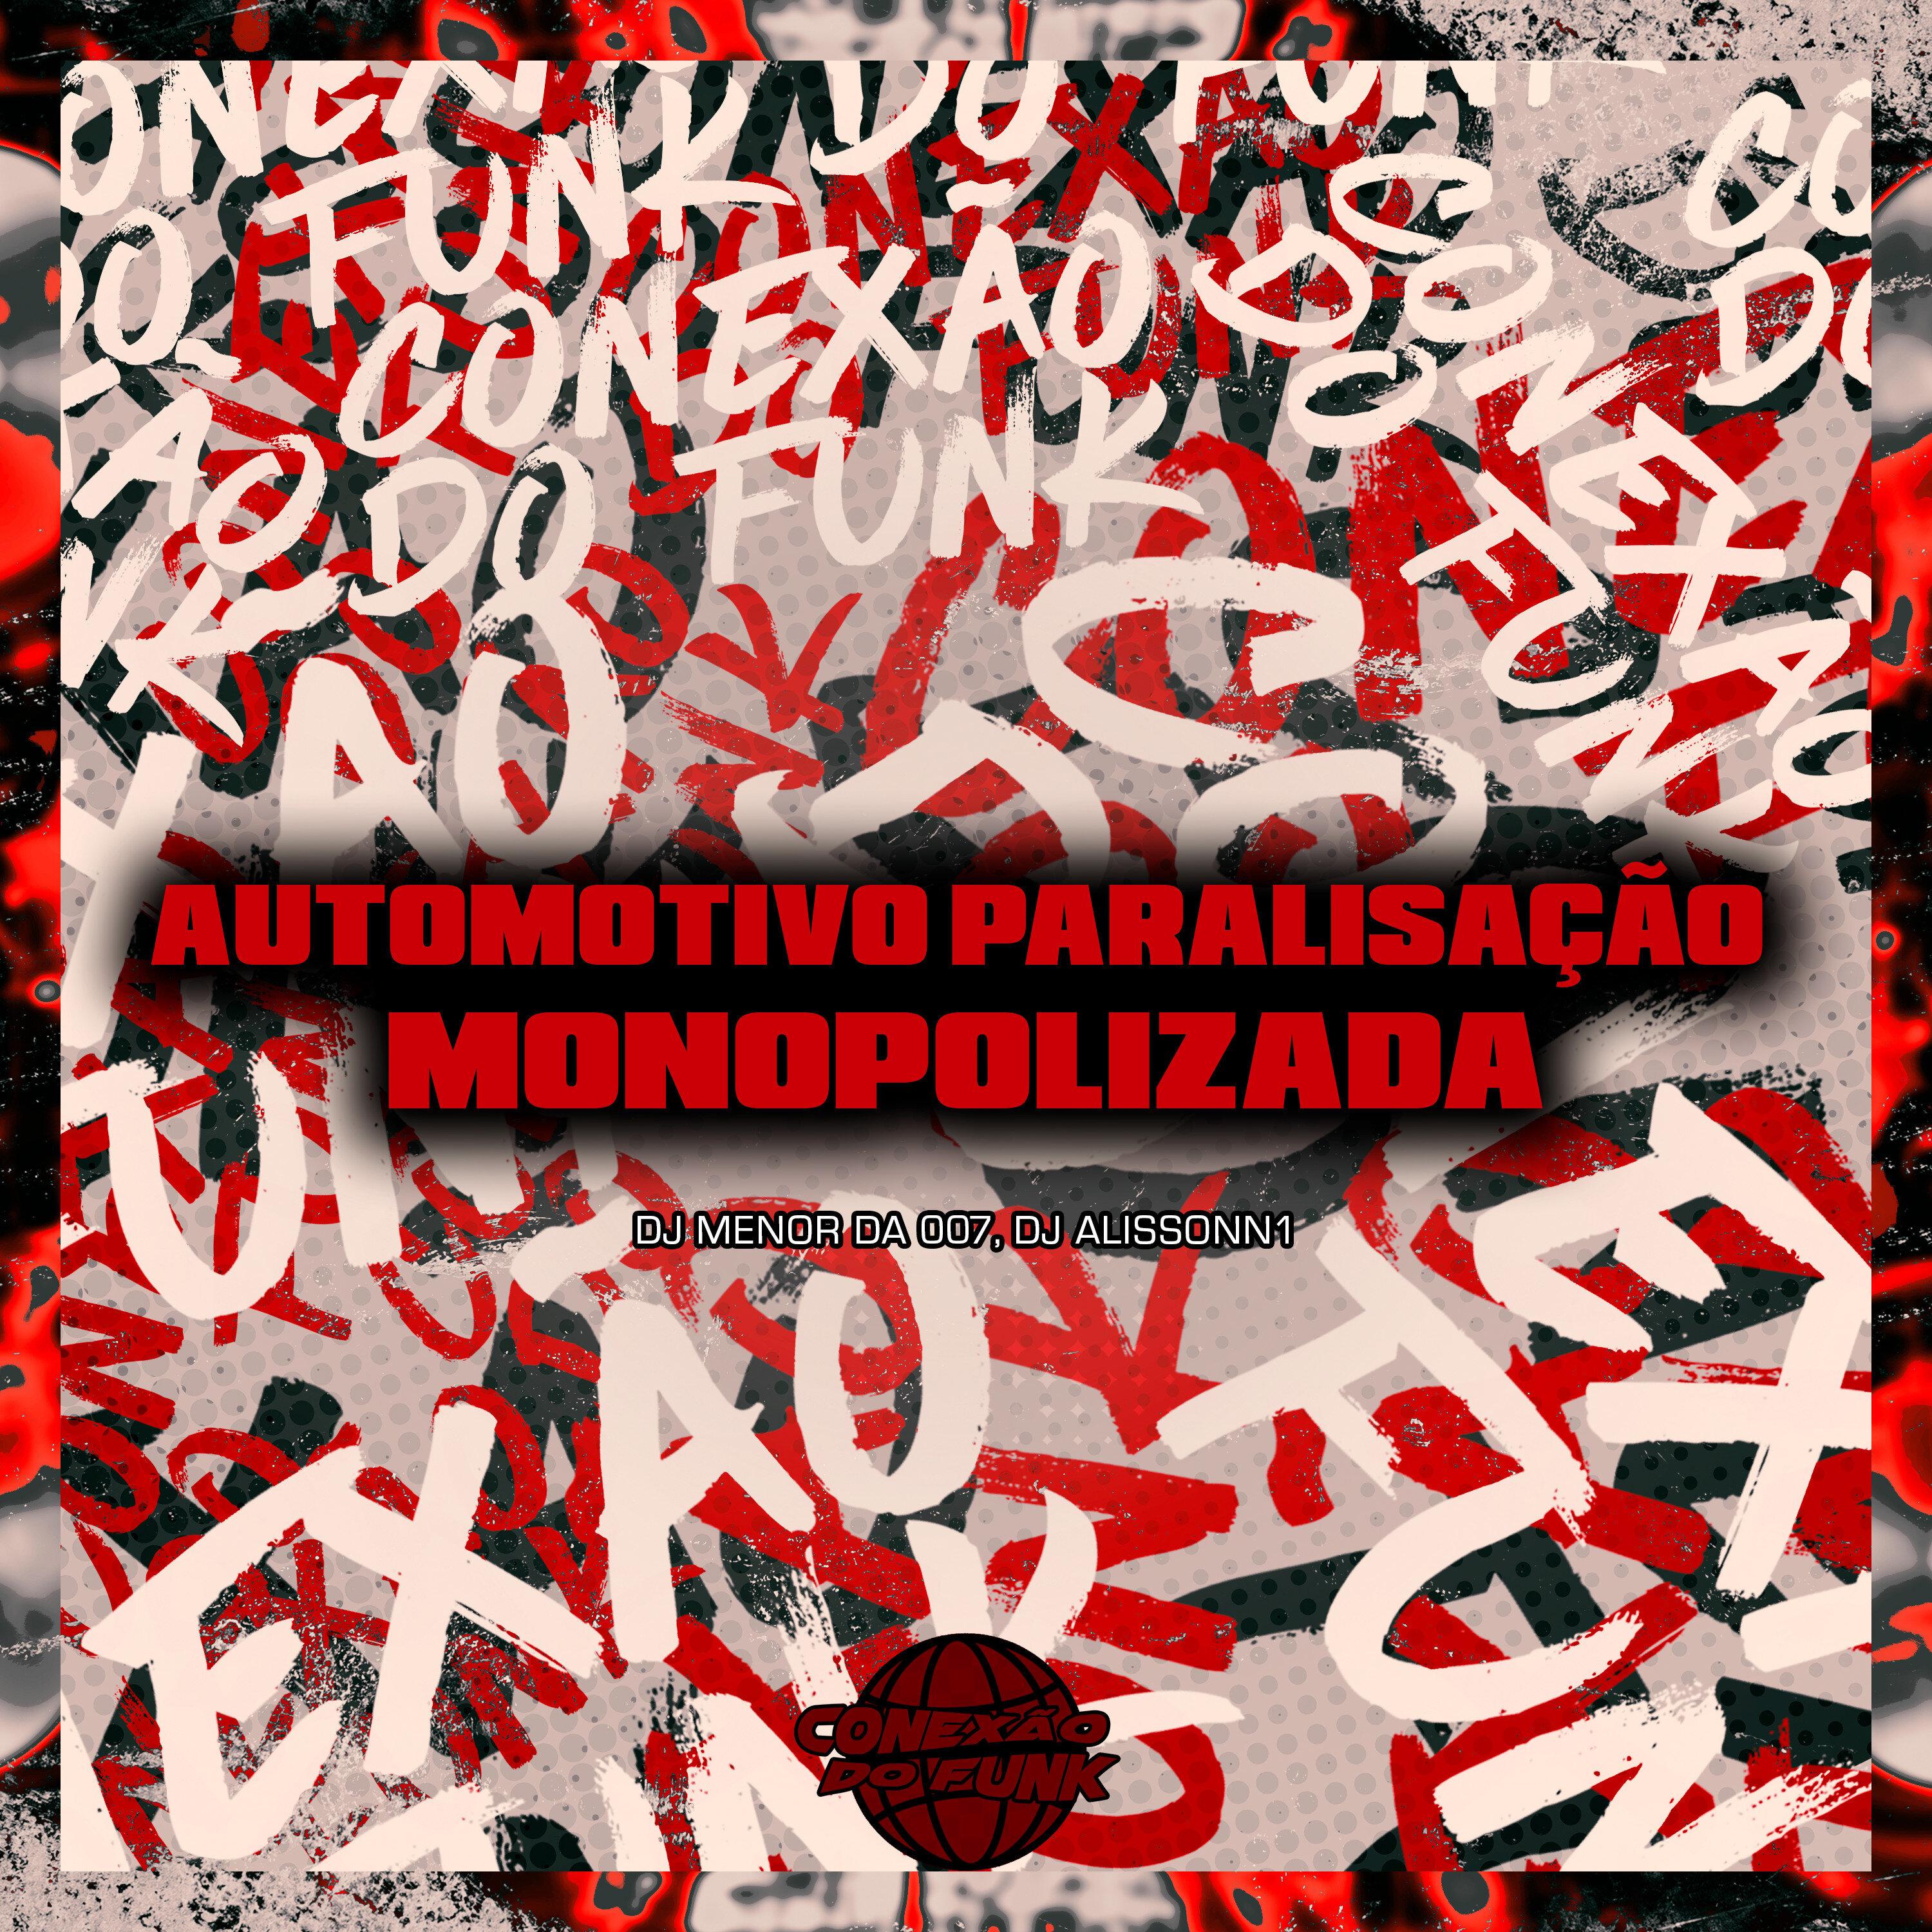 DJ MENOR DA 007 - Automotivo Paralisação Monopolizada (feat. Mc Gw & MC BM OFICIAL)